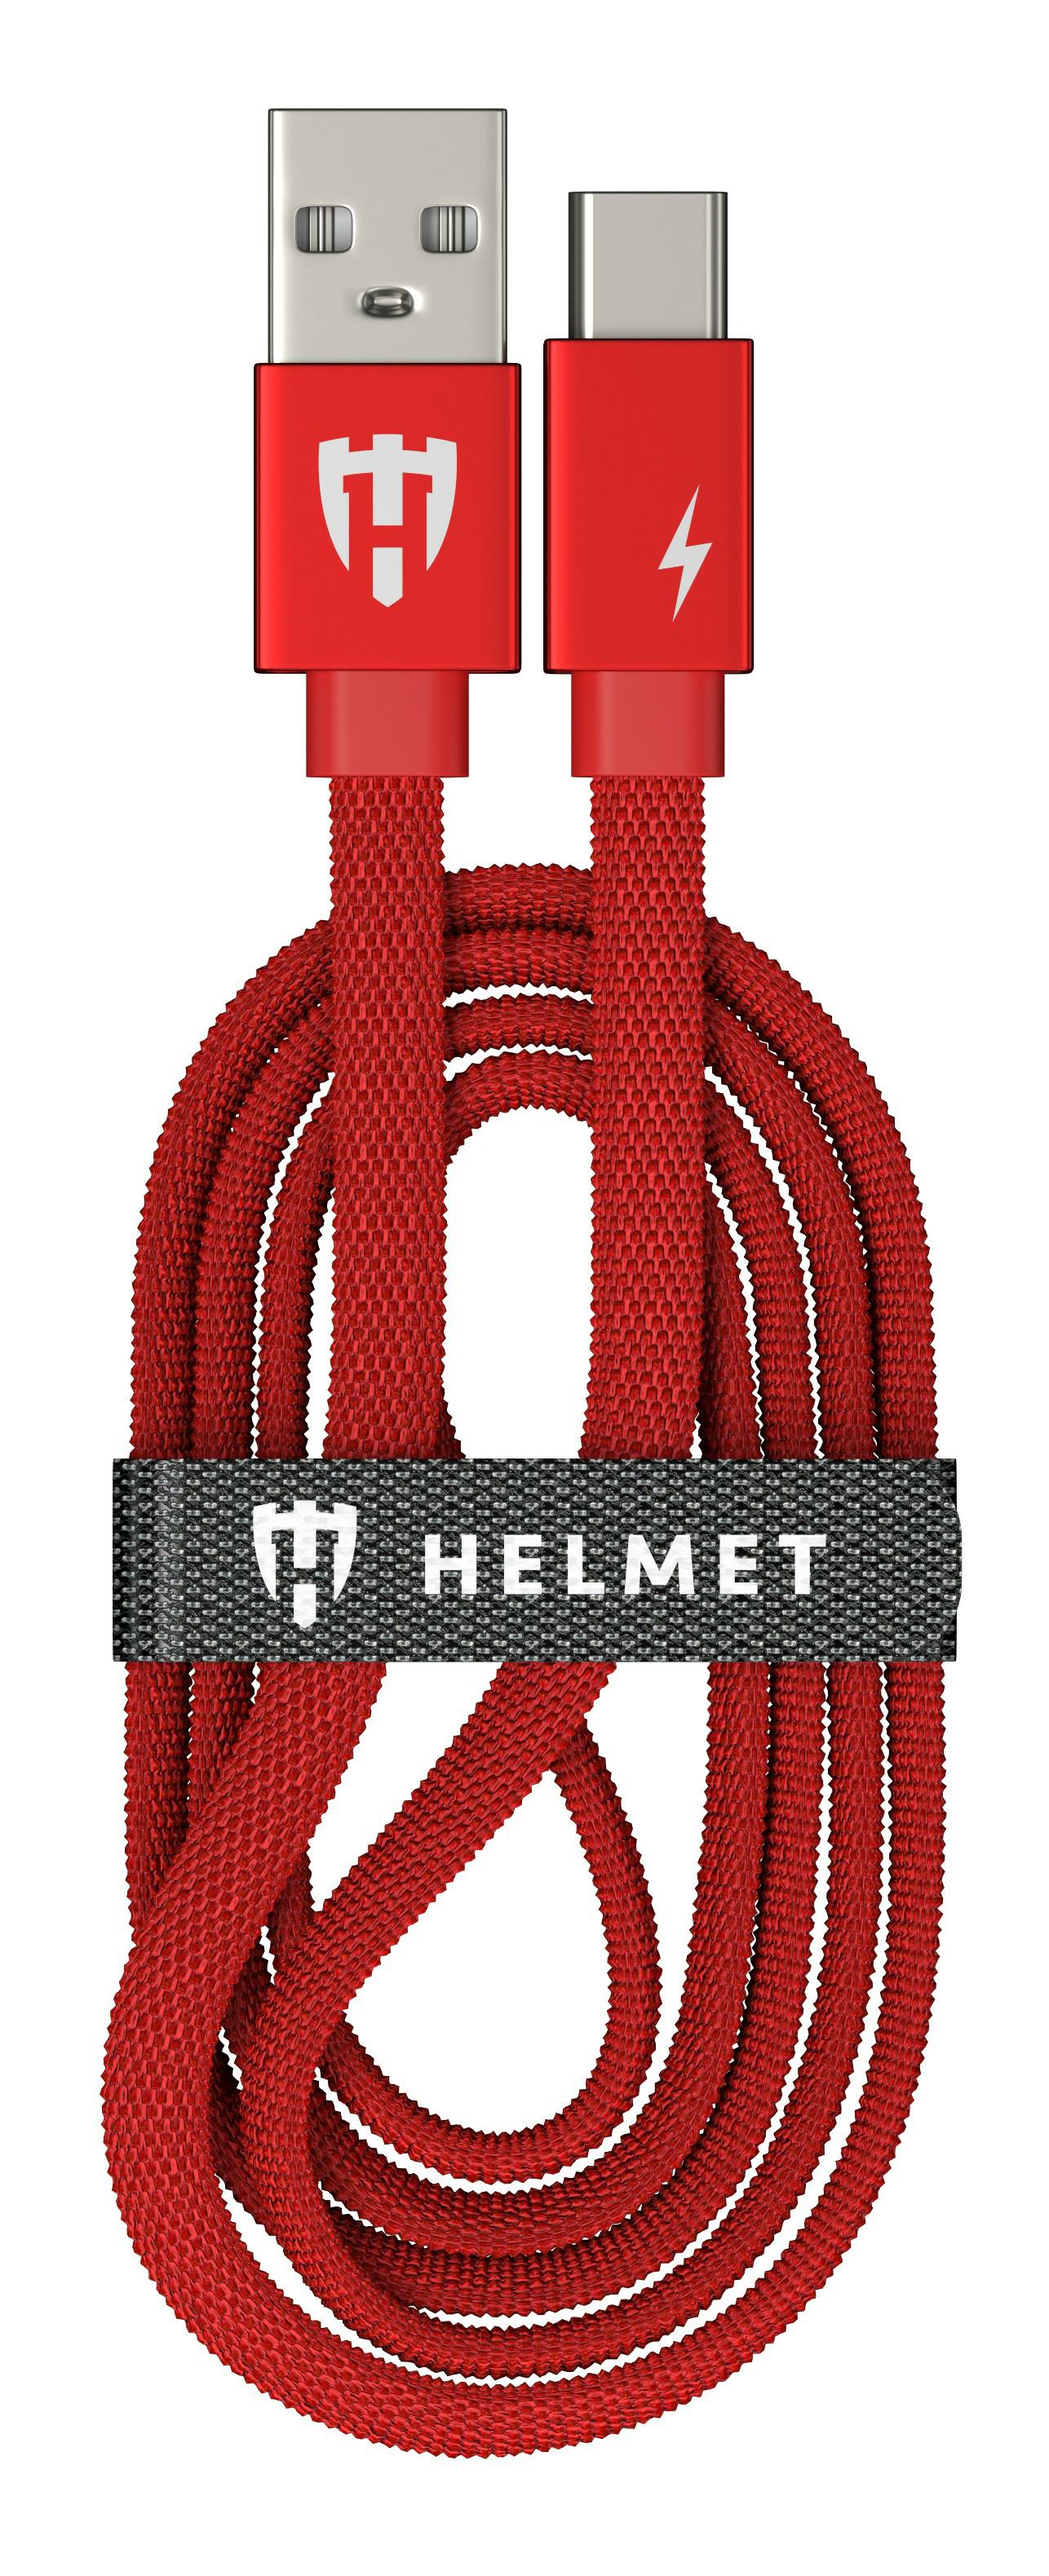 HL-CF223RD, Зарядный кабель Type-C HELMET Kevlar Flat Cable 1m Red,
Зарядный кабель Type-C HELMET Kevlar Flat Cable - 1m Red